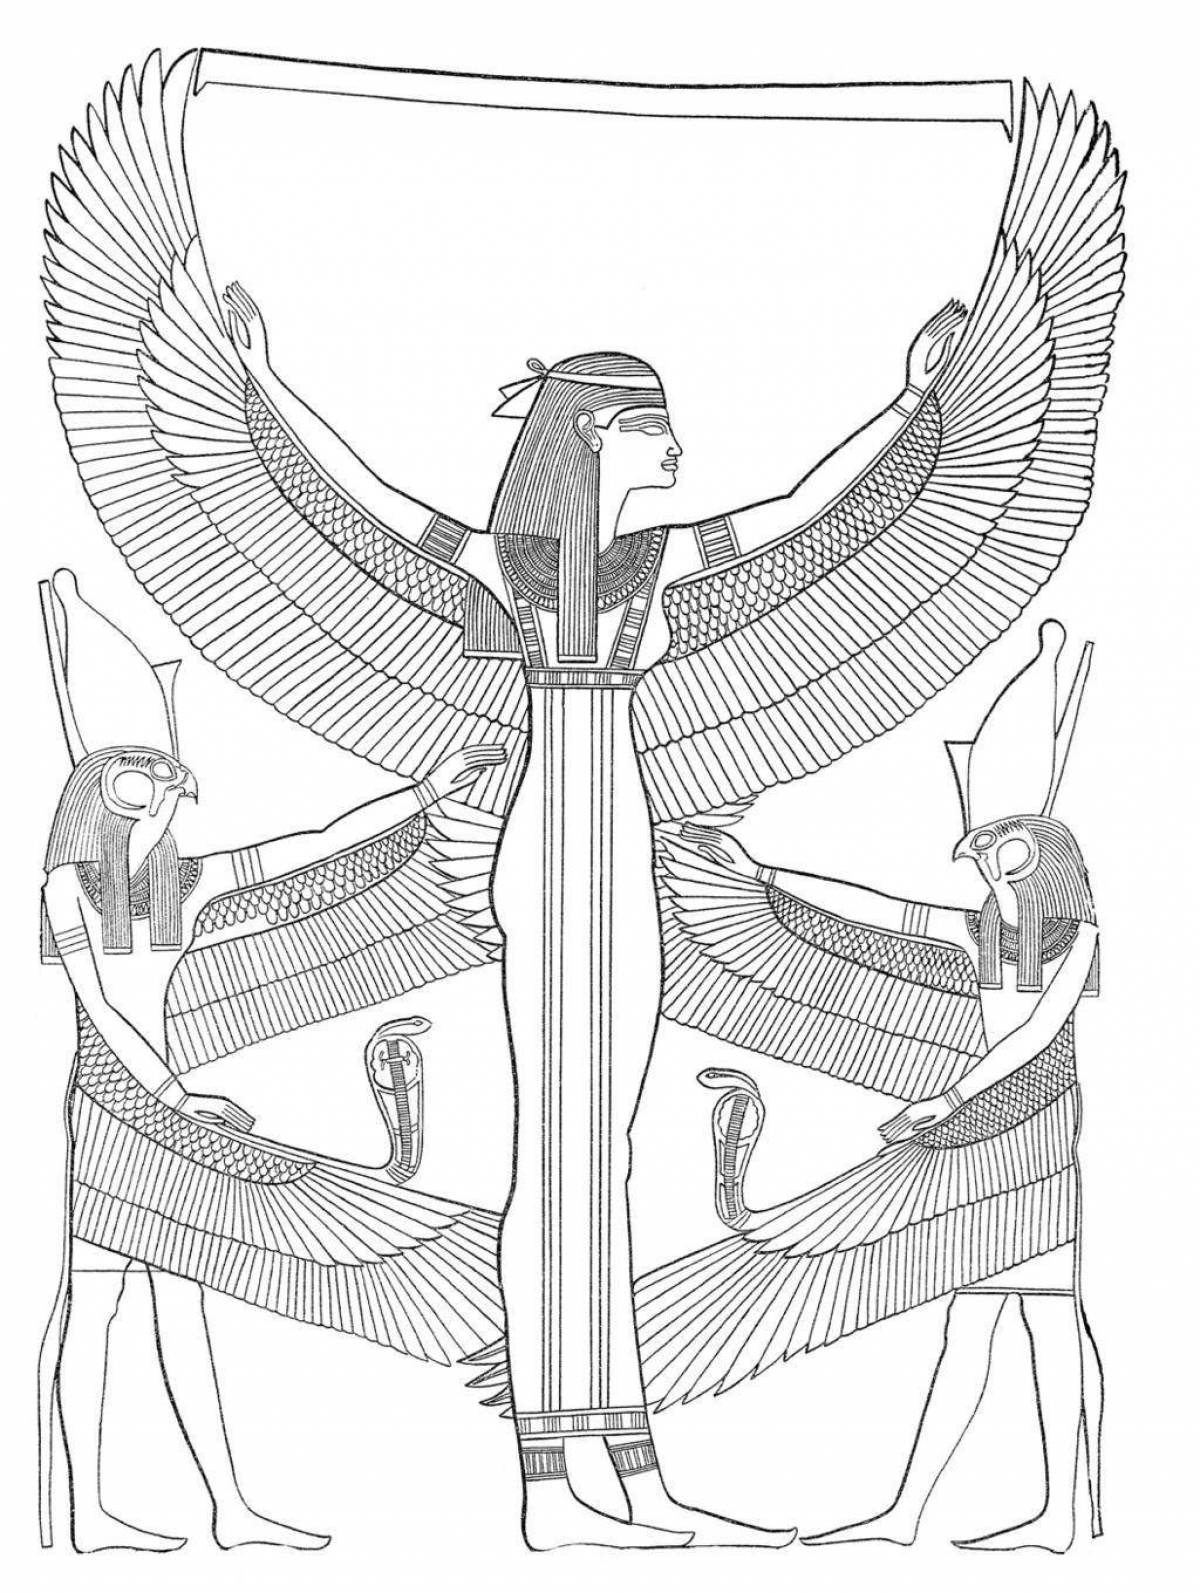 Мифология древнего Египта